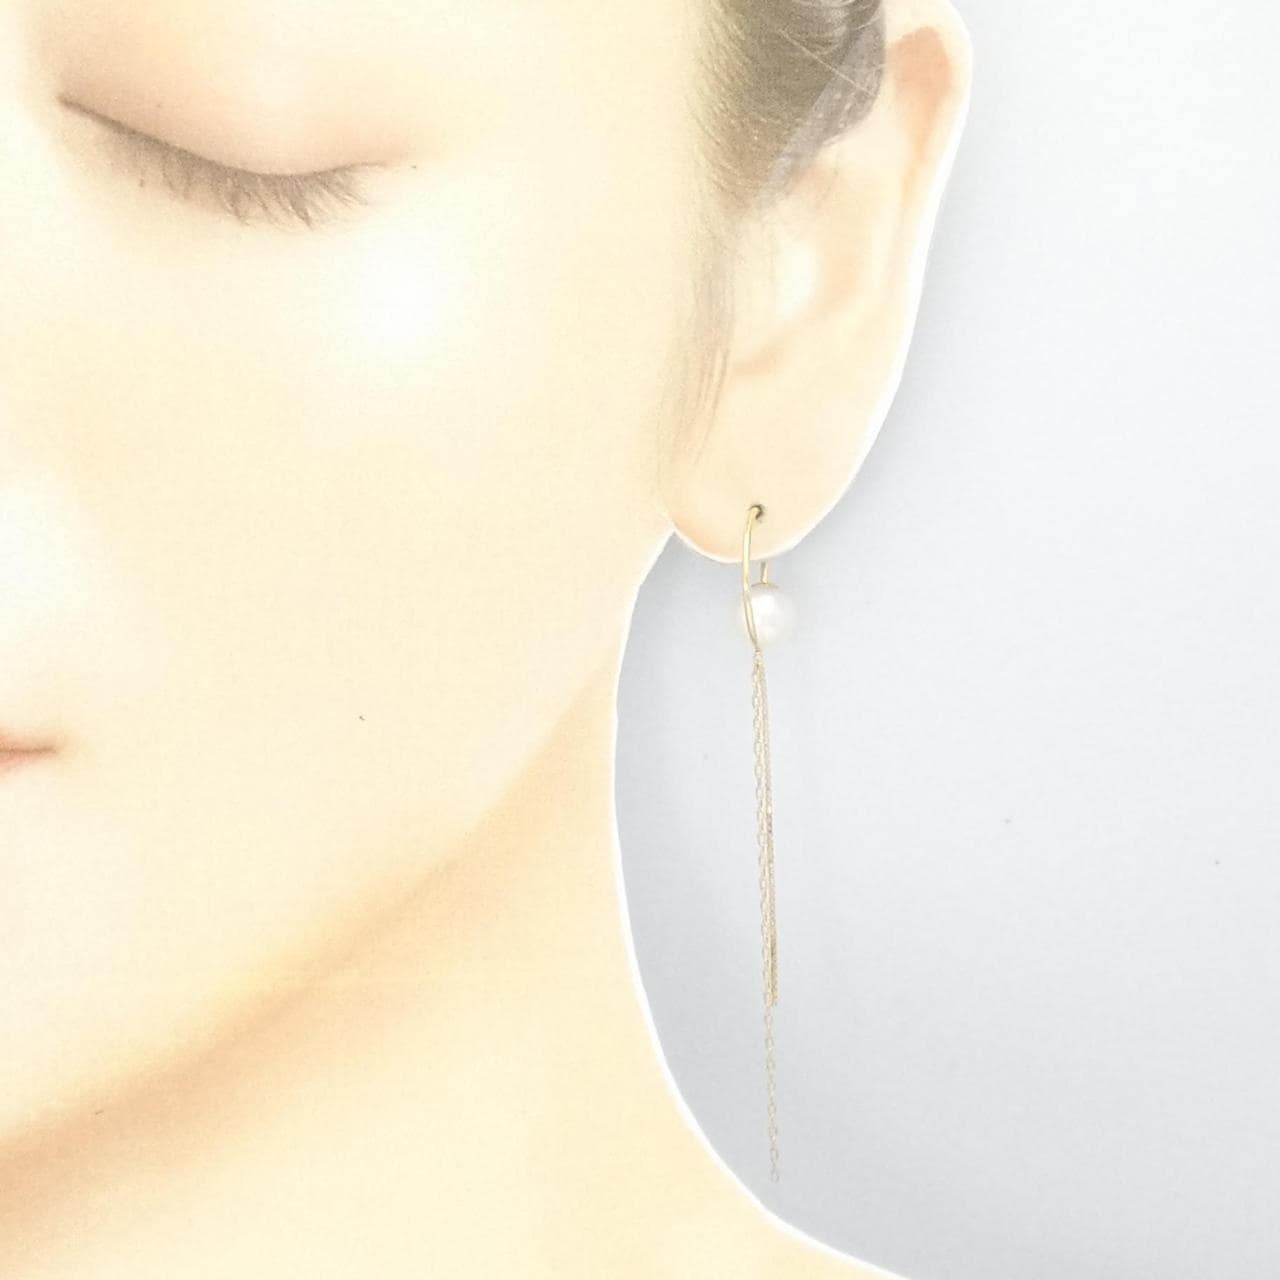 Hirotaka Akoya pearl earrings, one ear, 7.6mm